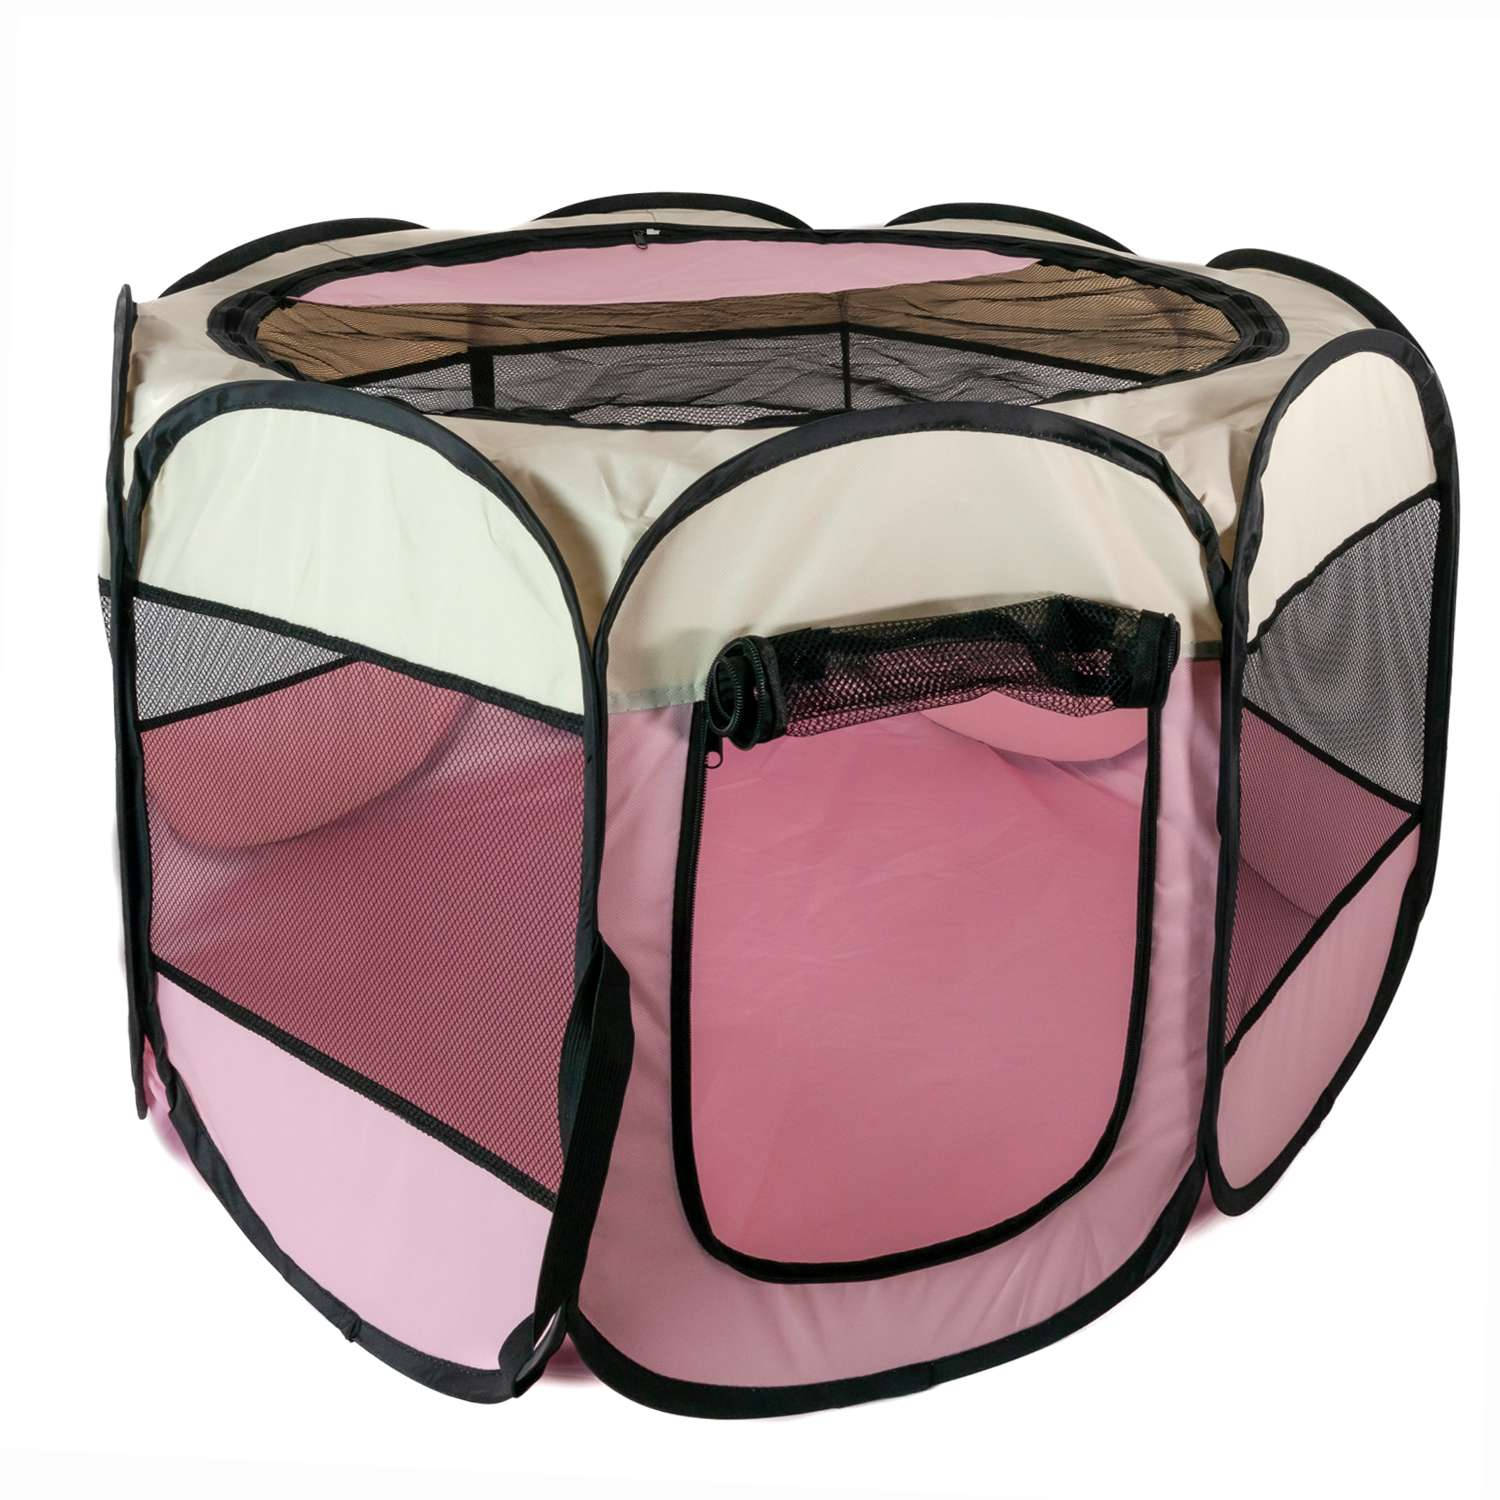 Intirilife Praktische dierenbox 77 x 58 cm Oxford stoffen speeltent in Roze - Voor honden katten of konijnen om te vervoeren spelen en rusten